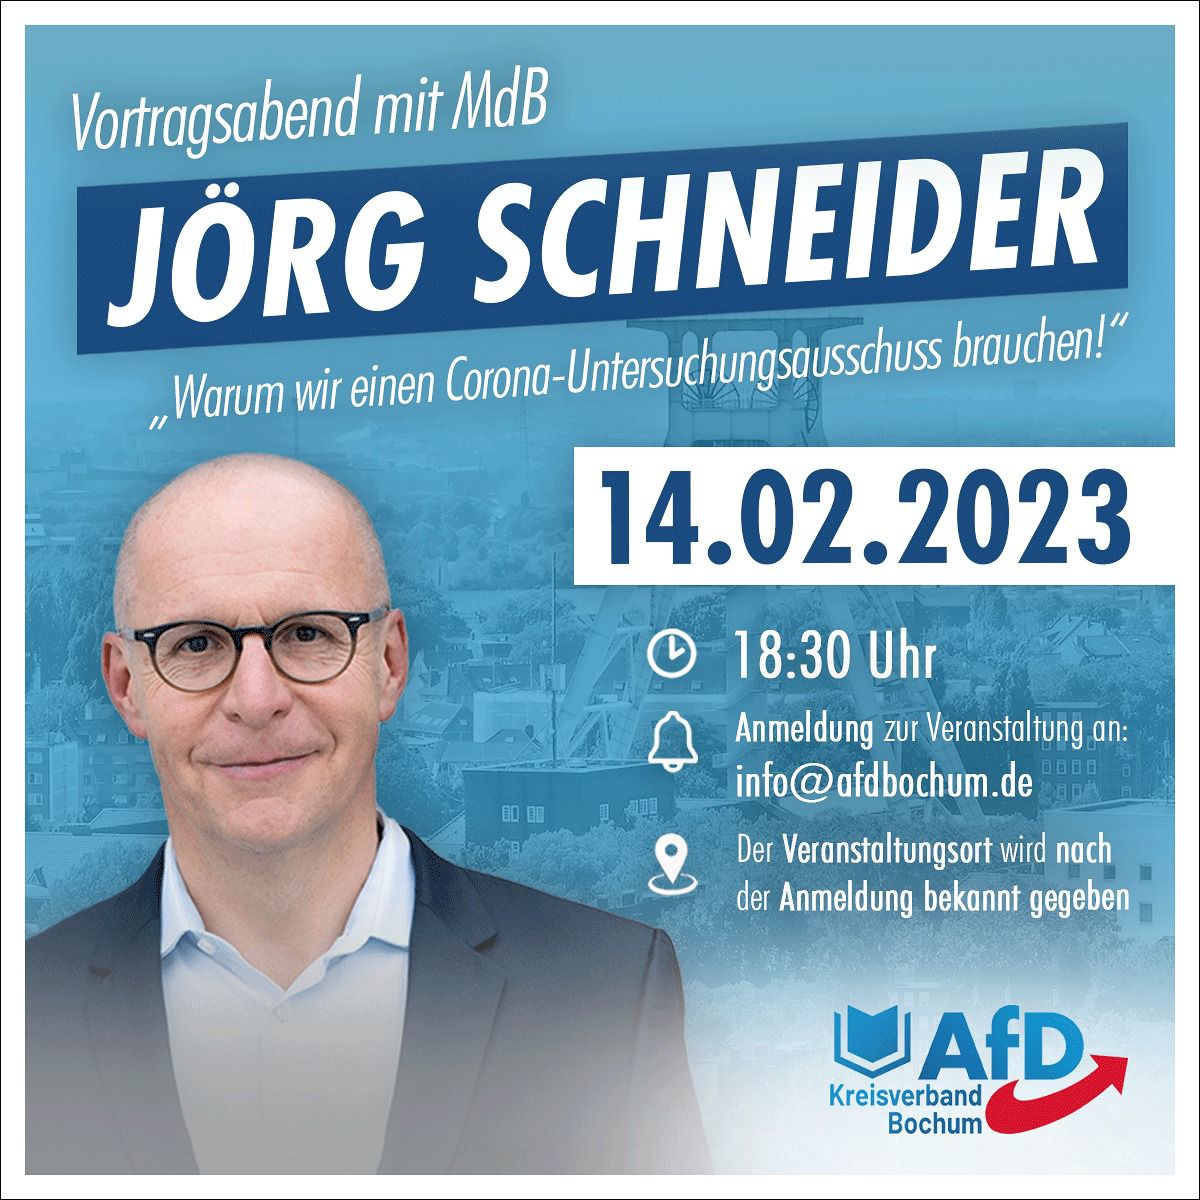 You are currently viewing Vortragsabend Jörg Schneider Stammtisch Bochum